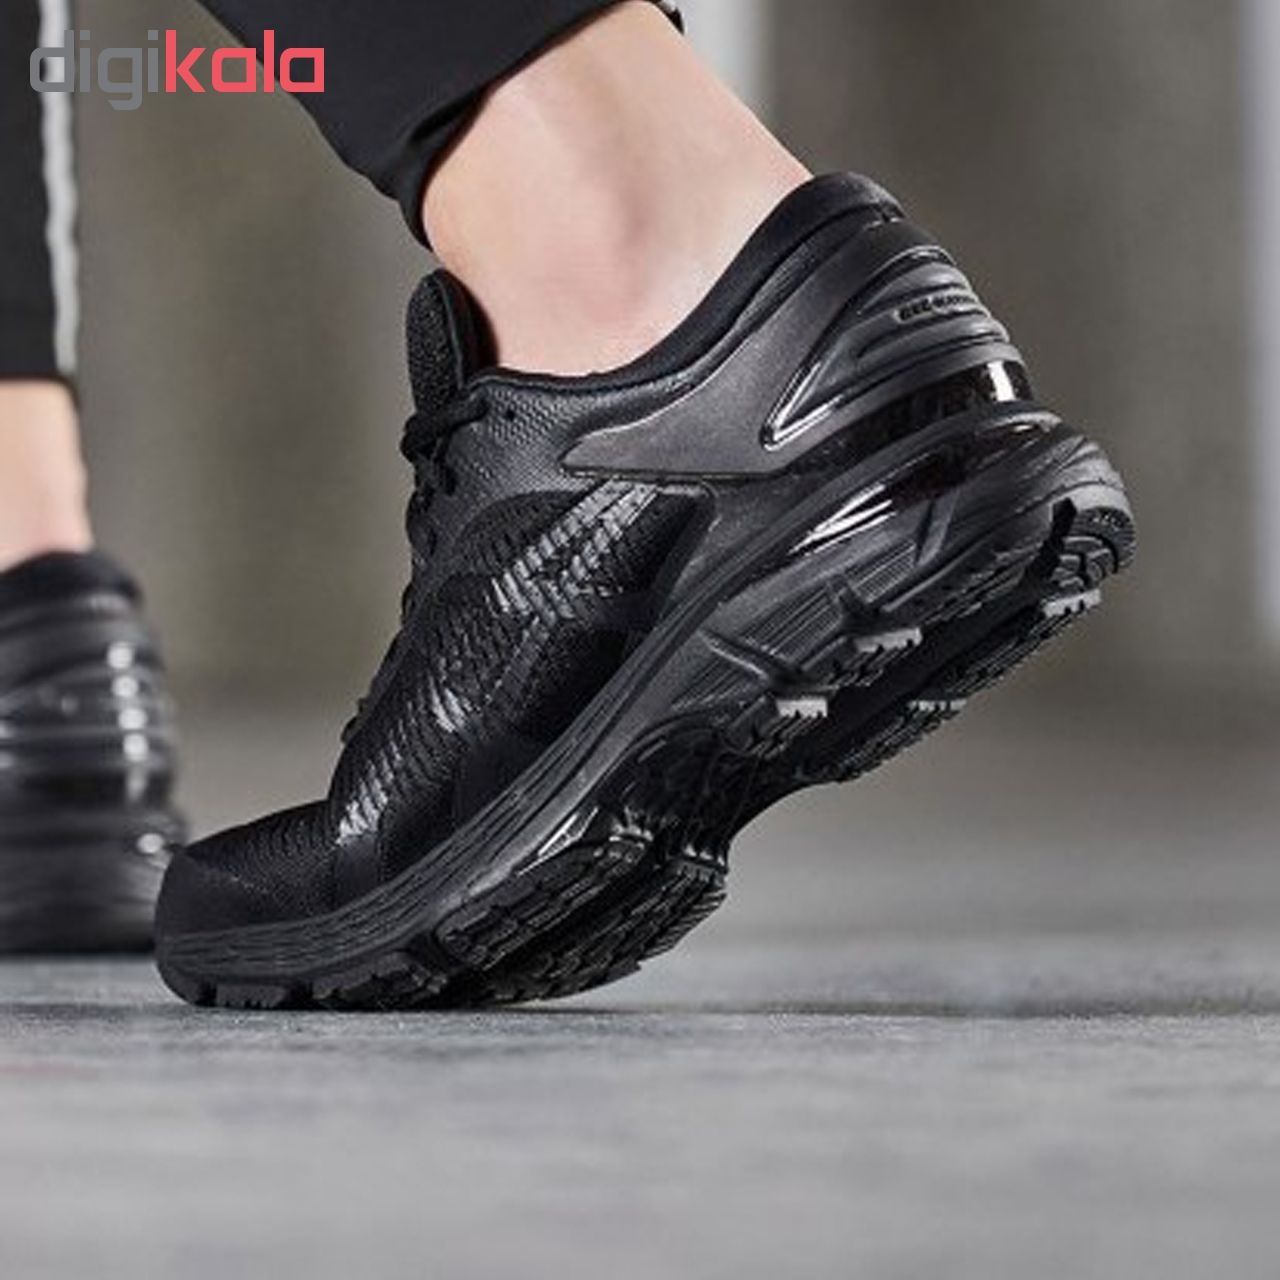  کفش مخصوص دویدن مردانه اسیکس مدلkayano کد T8756-09